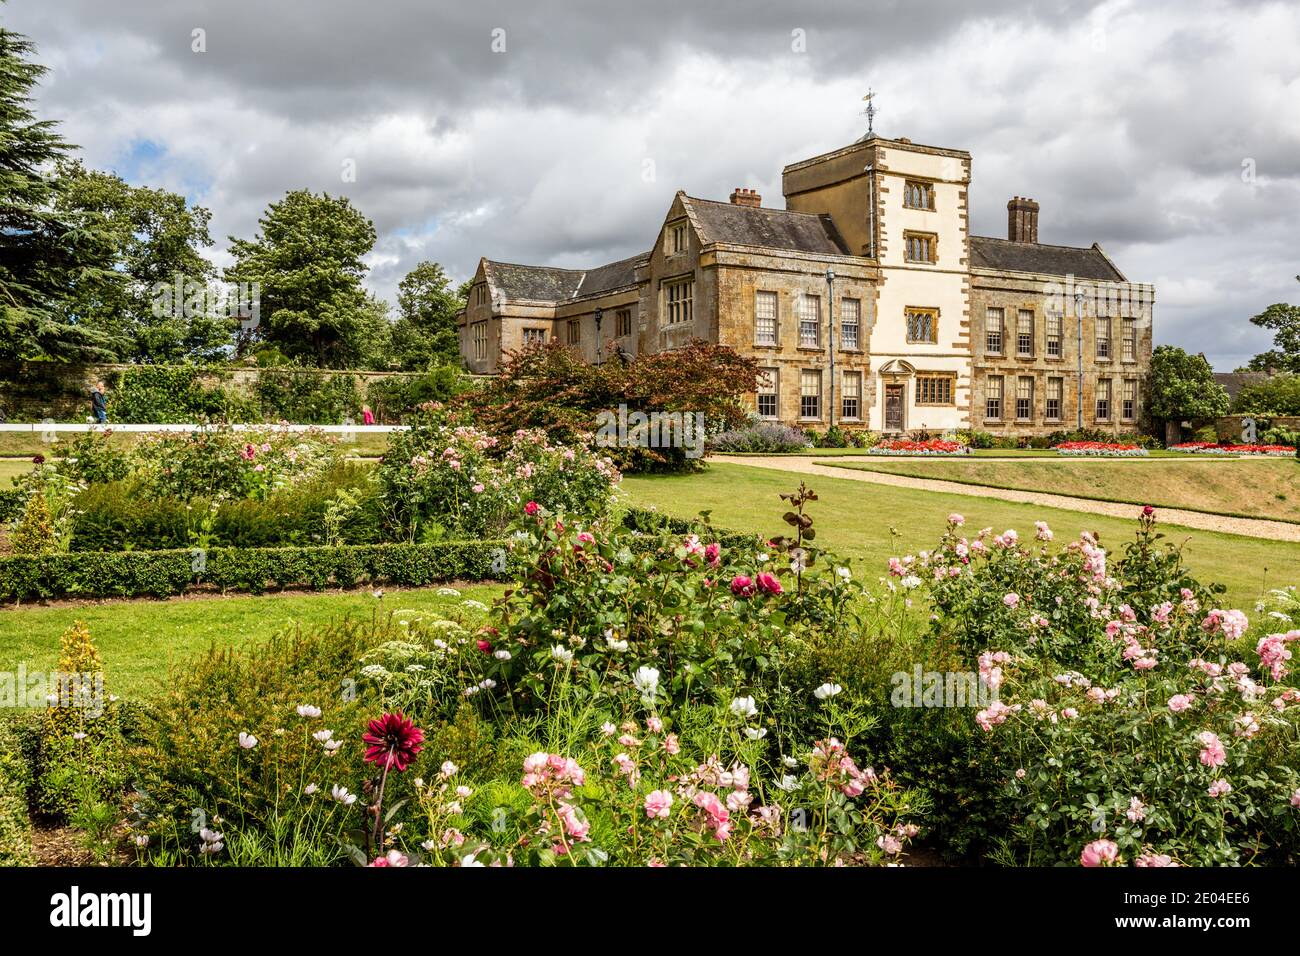 La maison et les jardins de Canons Ashby, un manoir élisabéthain situé à Canons Ashby, dans le Northamptonshire, en Angleterre. Banque D'Images